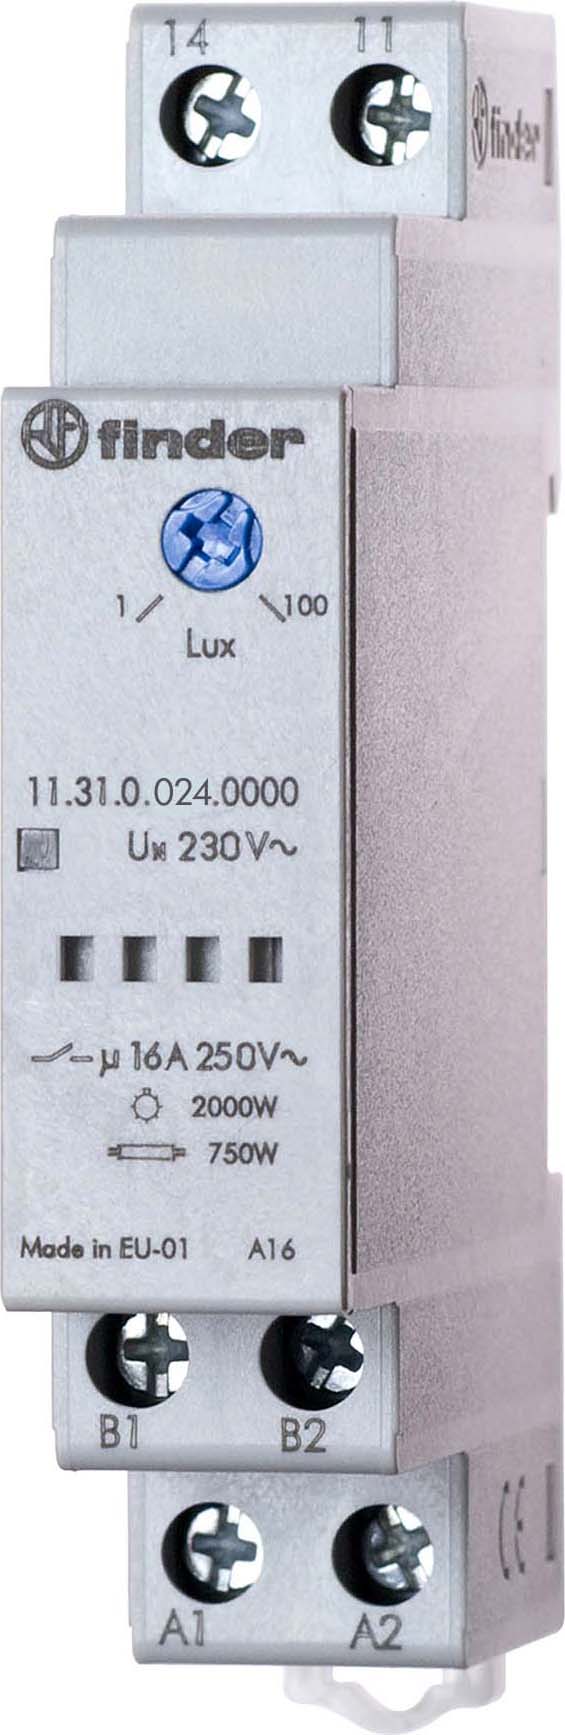 Finder Dämmerungsschalter 1-100Lux 16A 250VAC 11.31.0.024.0000